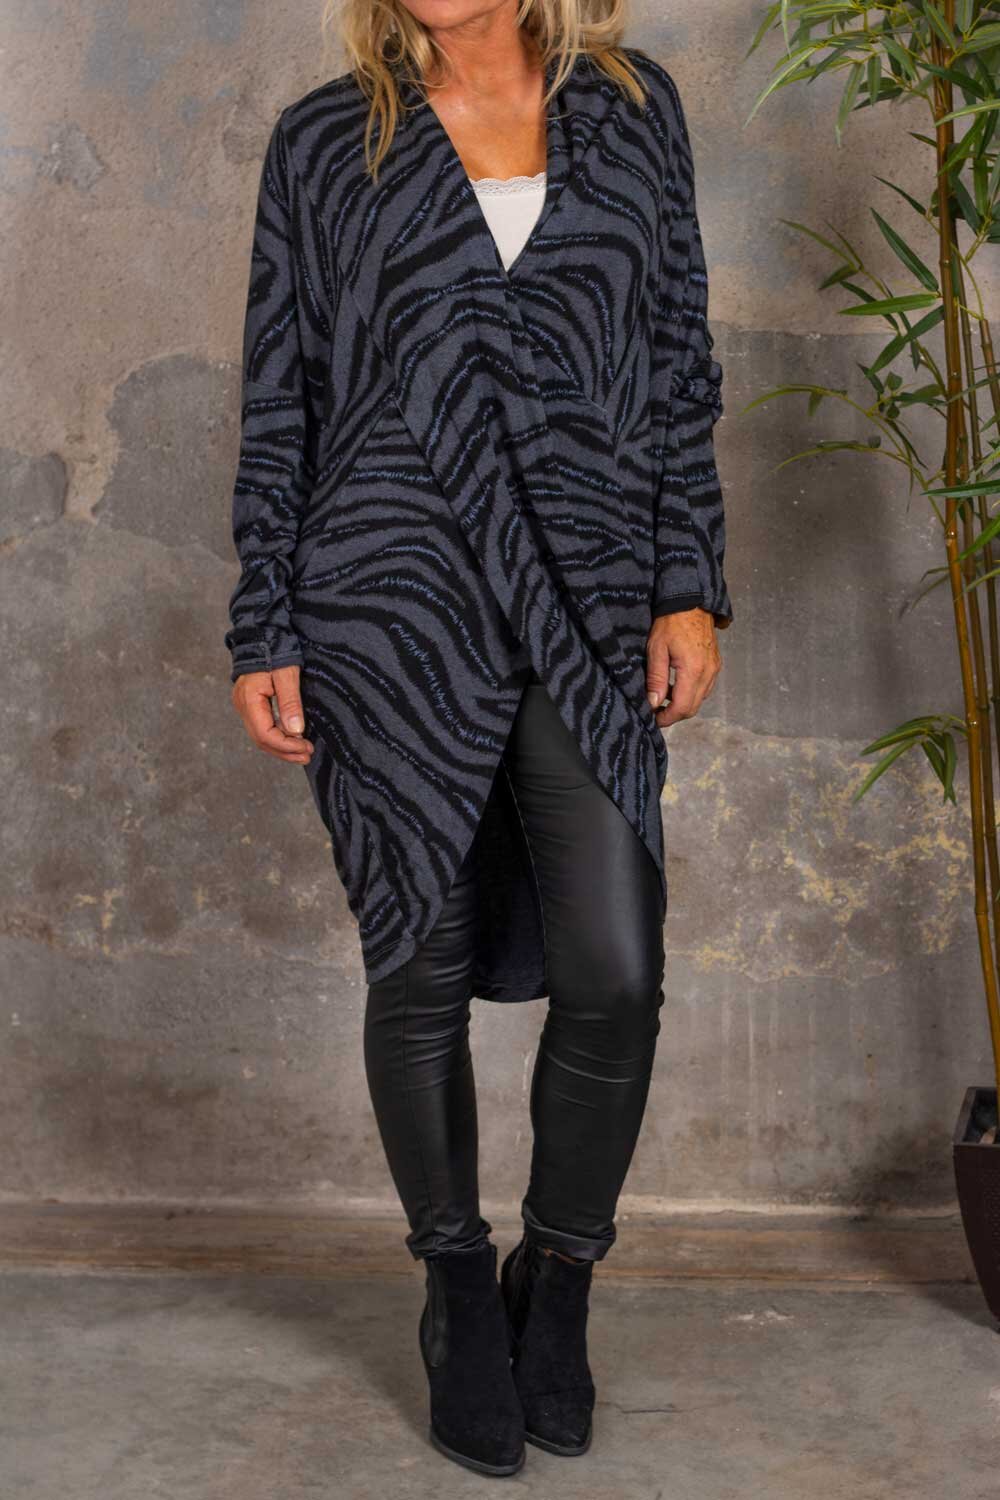 Crossover -genser - Zebra - Mørk grå